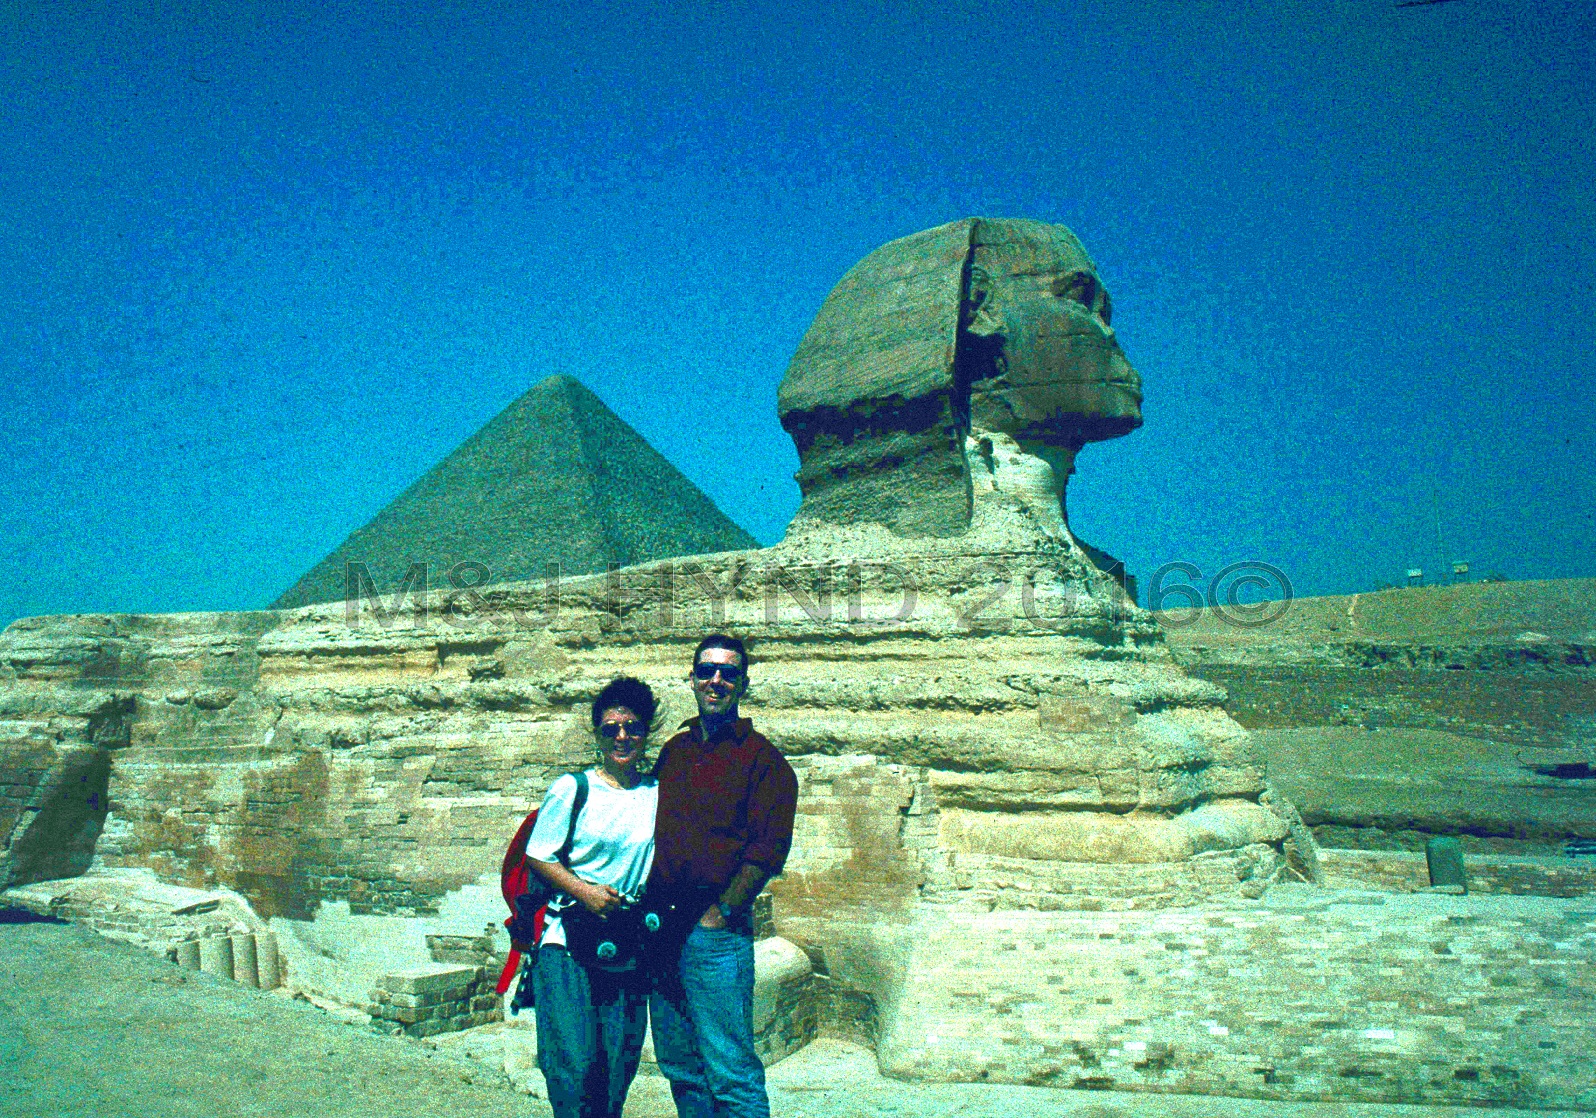 PreStroke pyramids of Giza & Sphinx, Cairo, Egypt